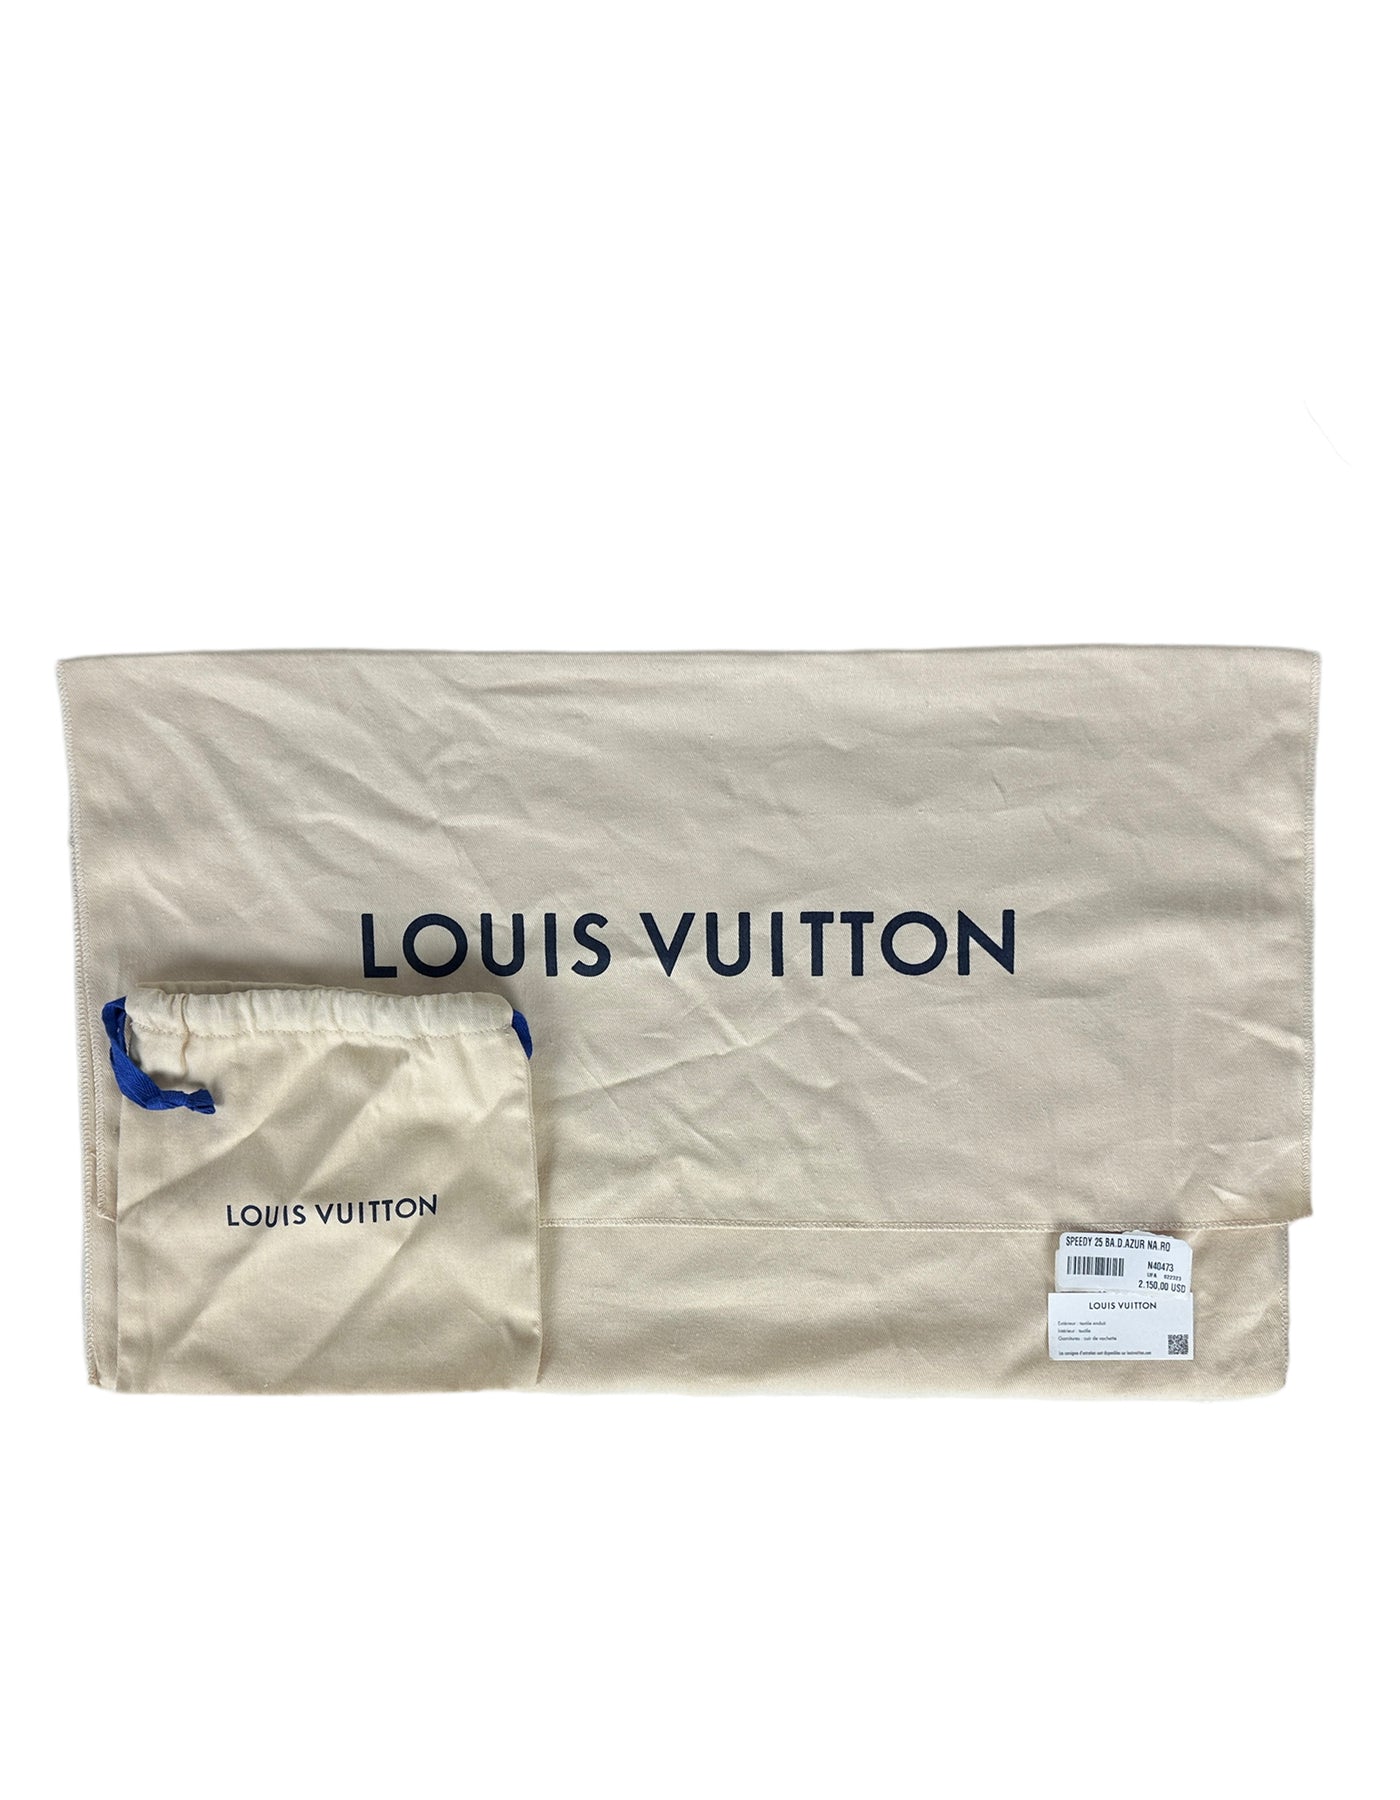 LOUIS VUITTON Nautical Speedy 25 Bandouliere Damier Azur Shoulder Bag